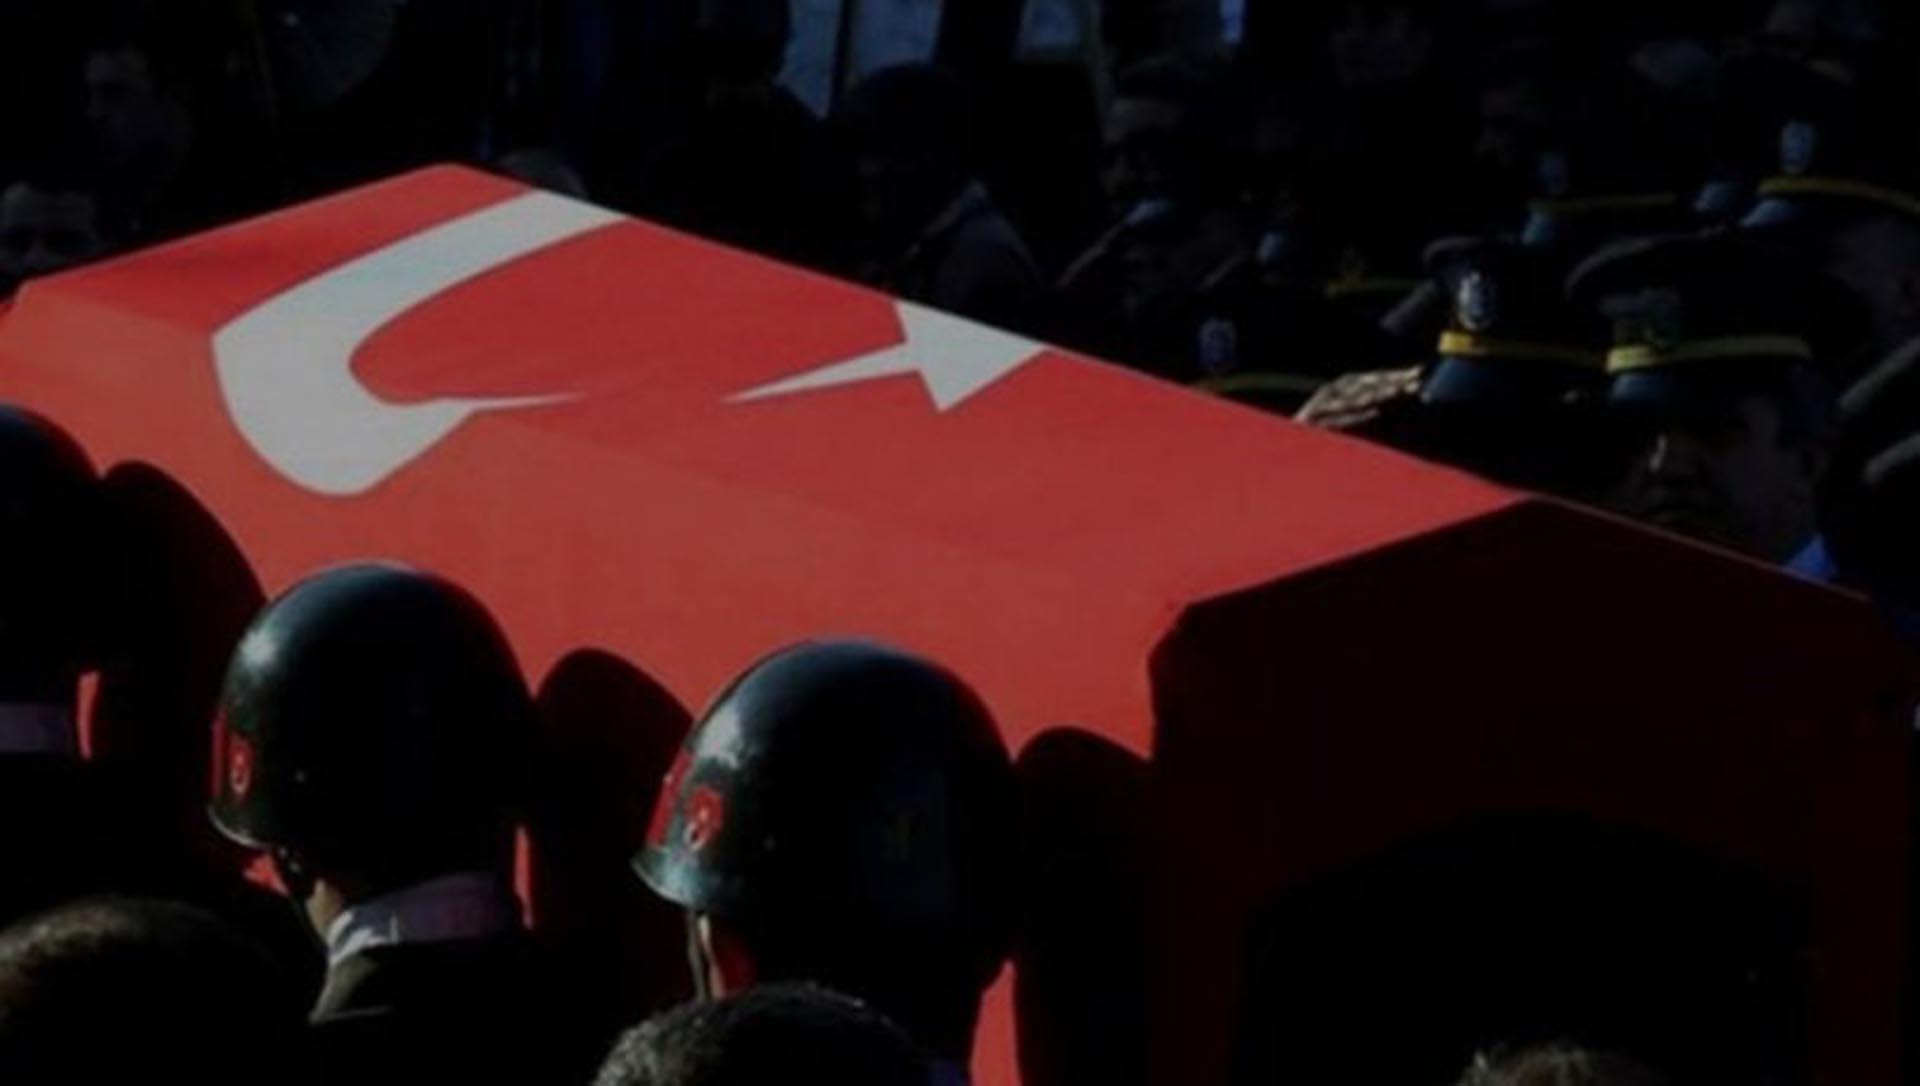 İzmir'den acı haber! Silah kazasında 1 asker şehit oldu